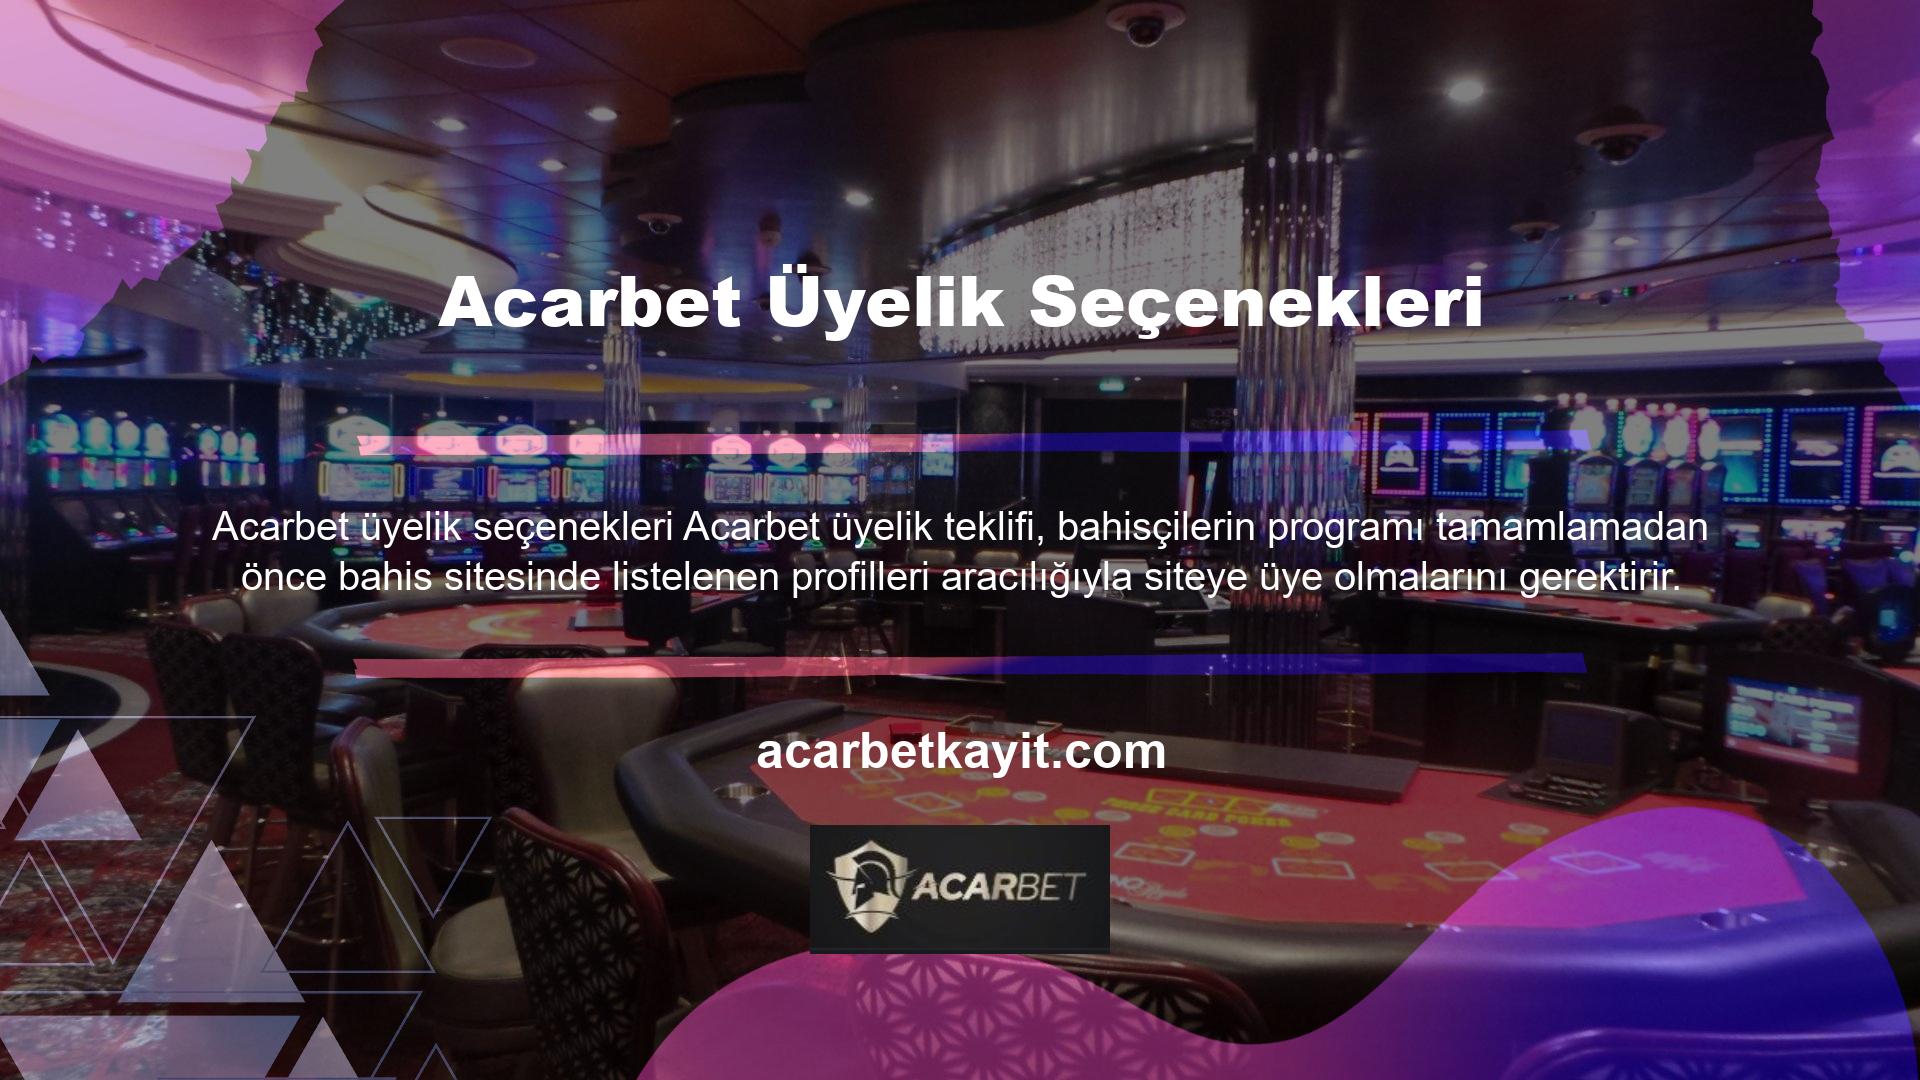 Oyun tutkunlarının bu siteye üye olabilmeleri için Acarbet üyelik işlemlerini tamamlamaları gerekmektedir